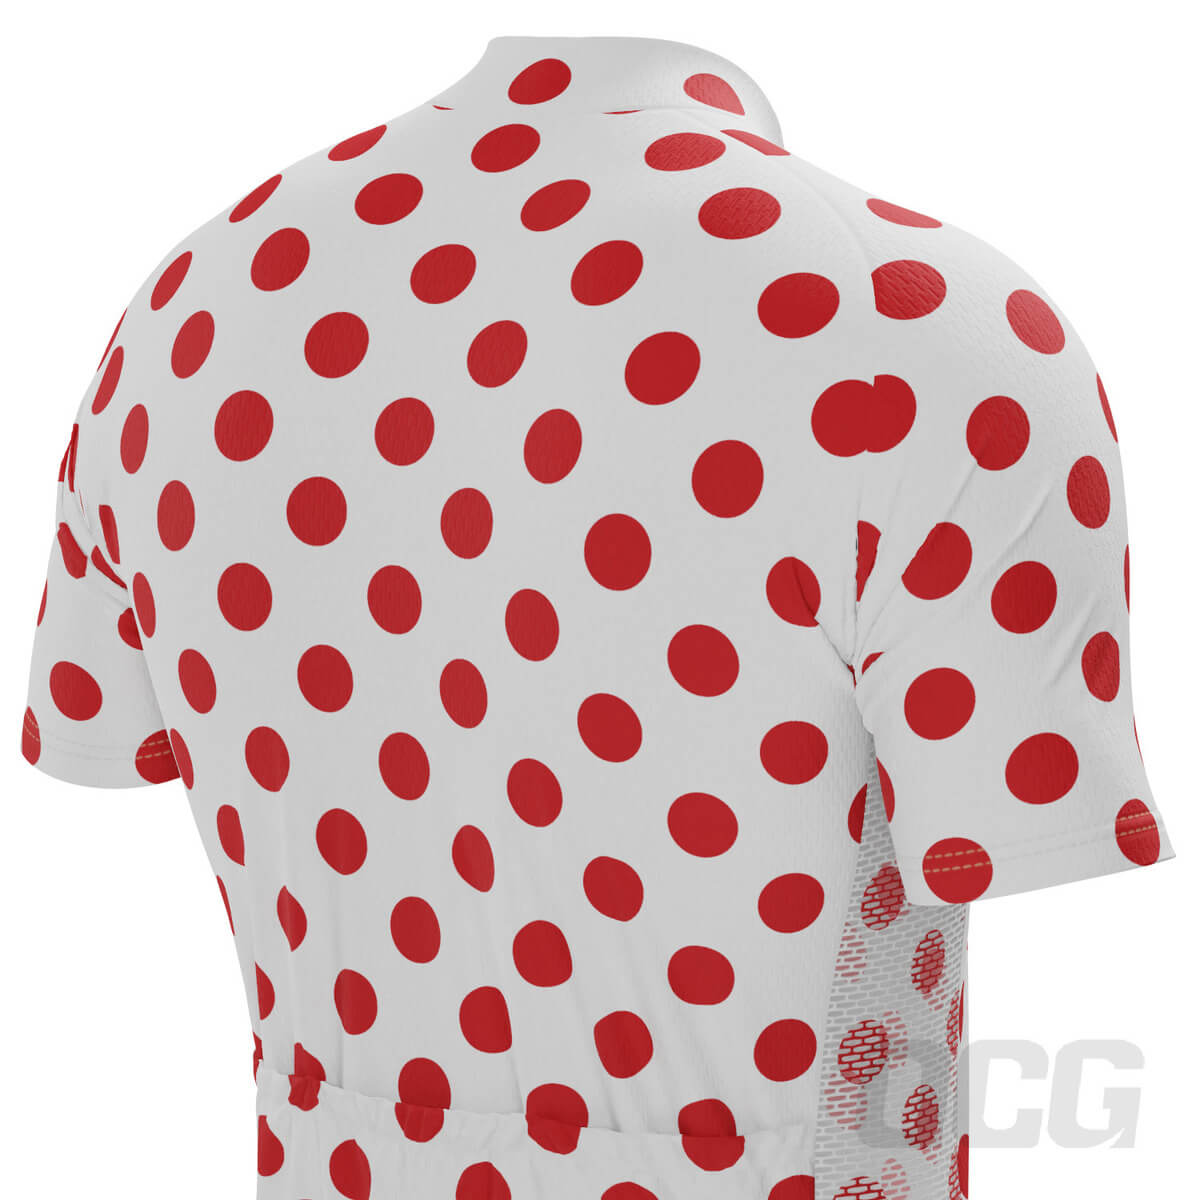 Men's White Polka Dot Short Sleeve Cycling Kit